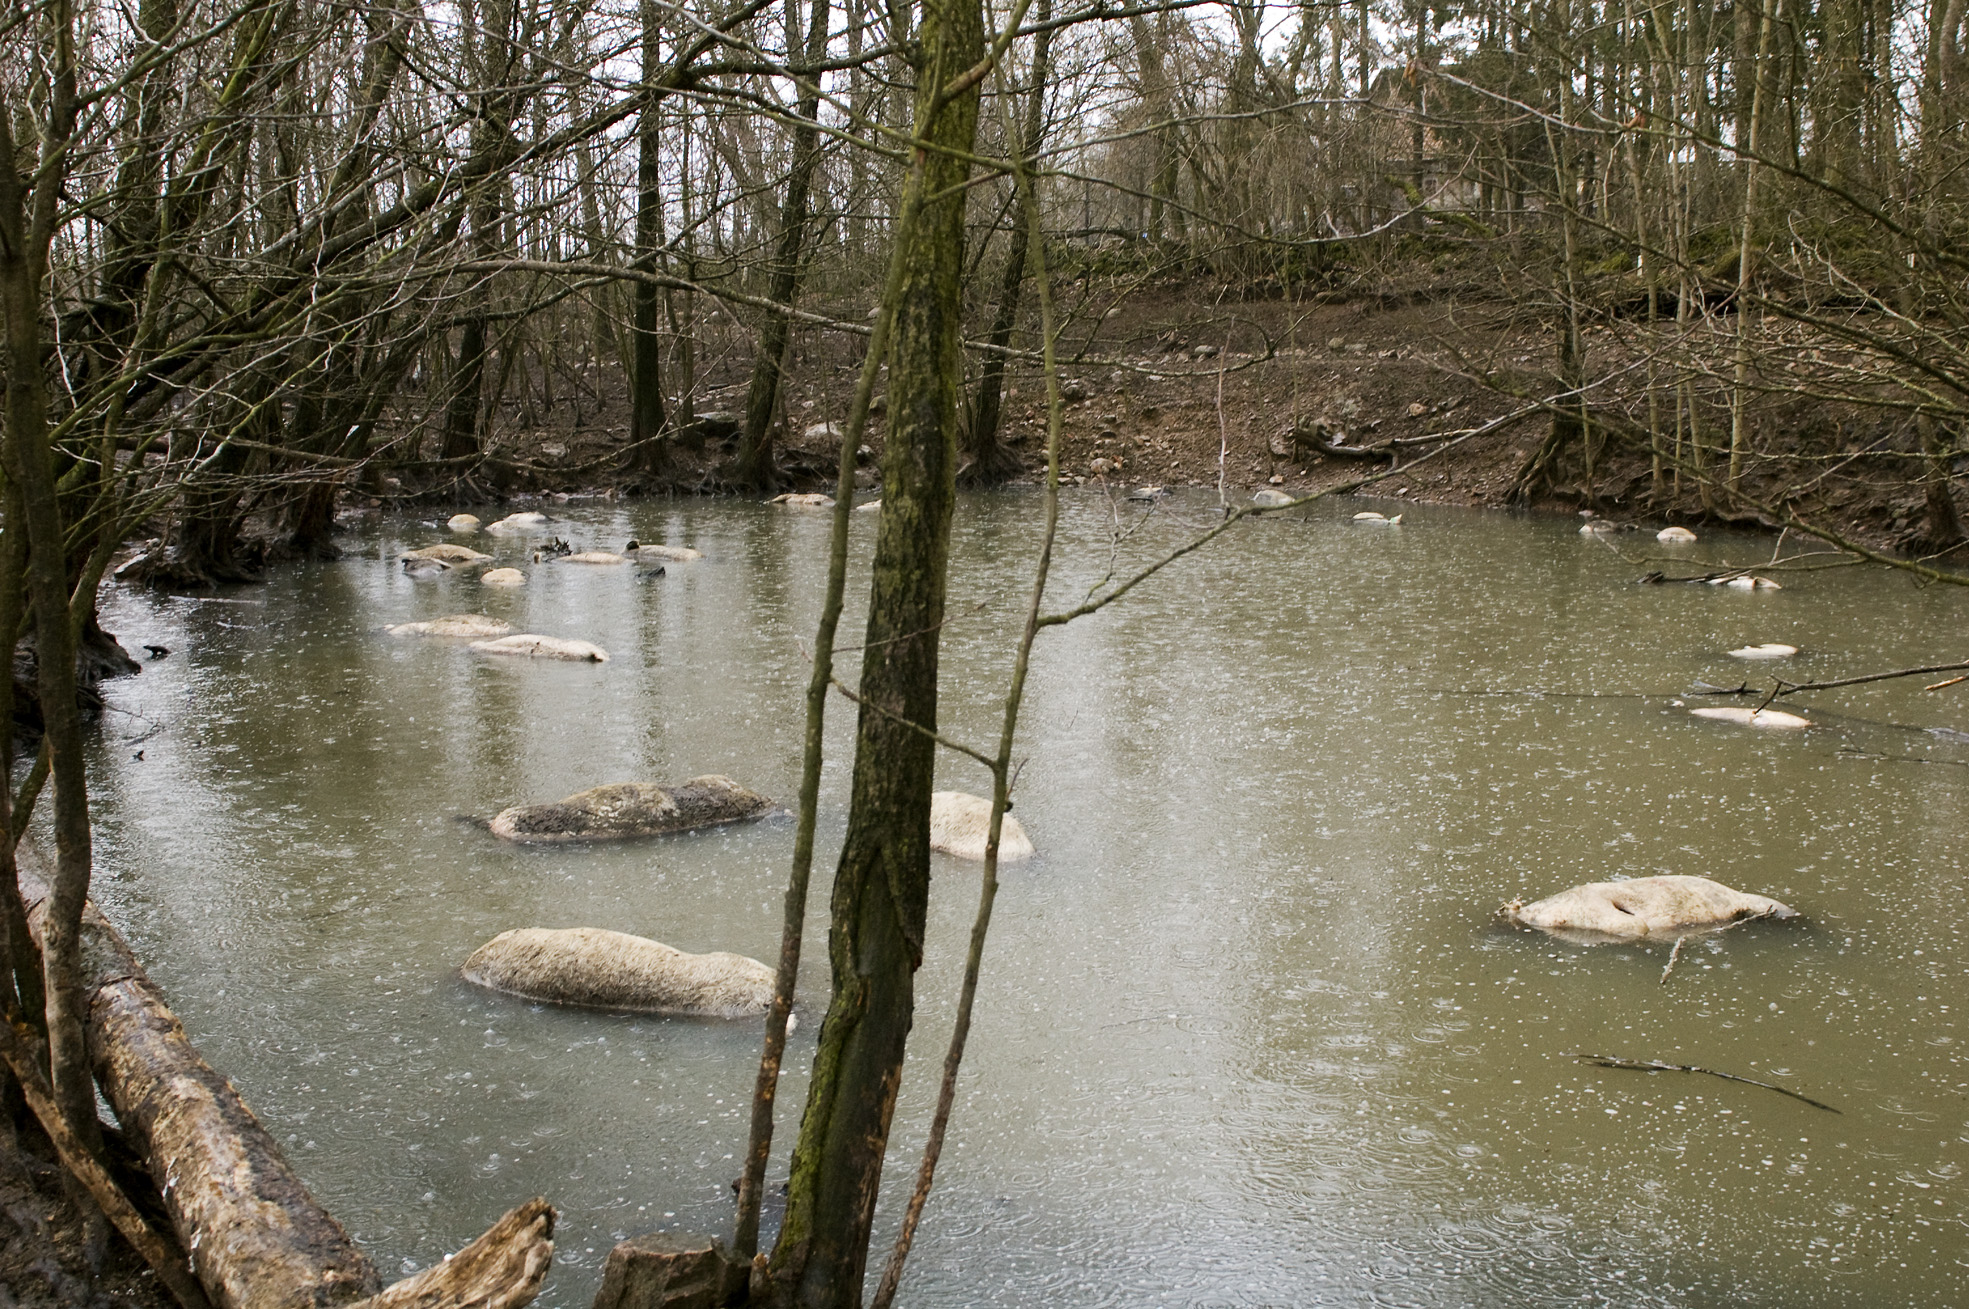 37 döda grisar hittades ligga och skvalpa i dammen.